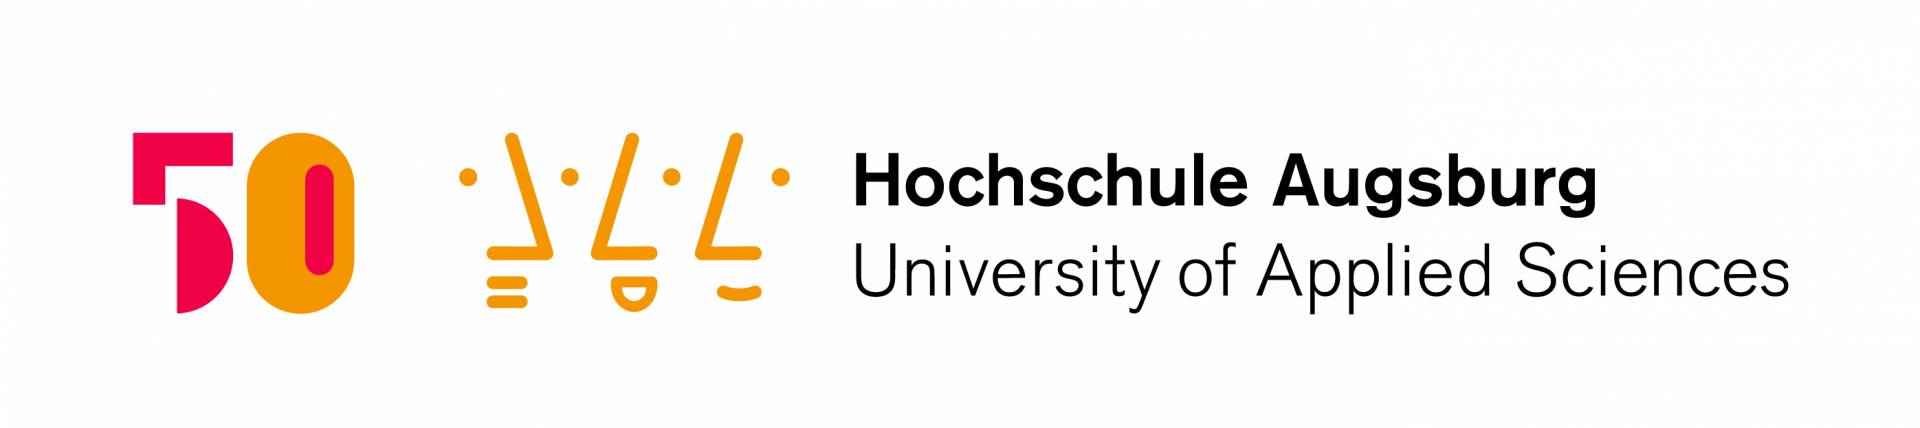 50 Jahre Hochschule Augsburg